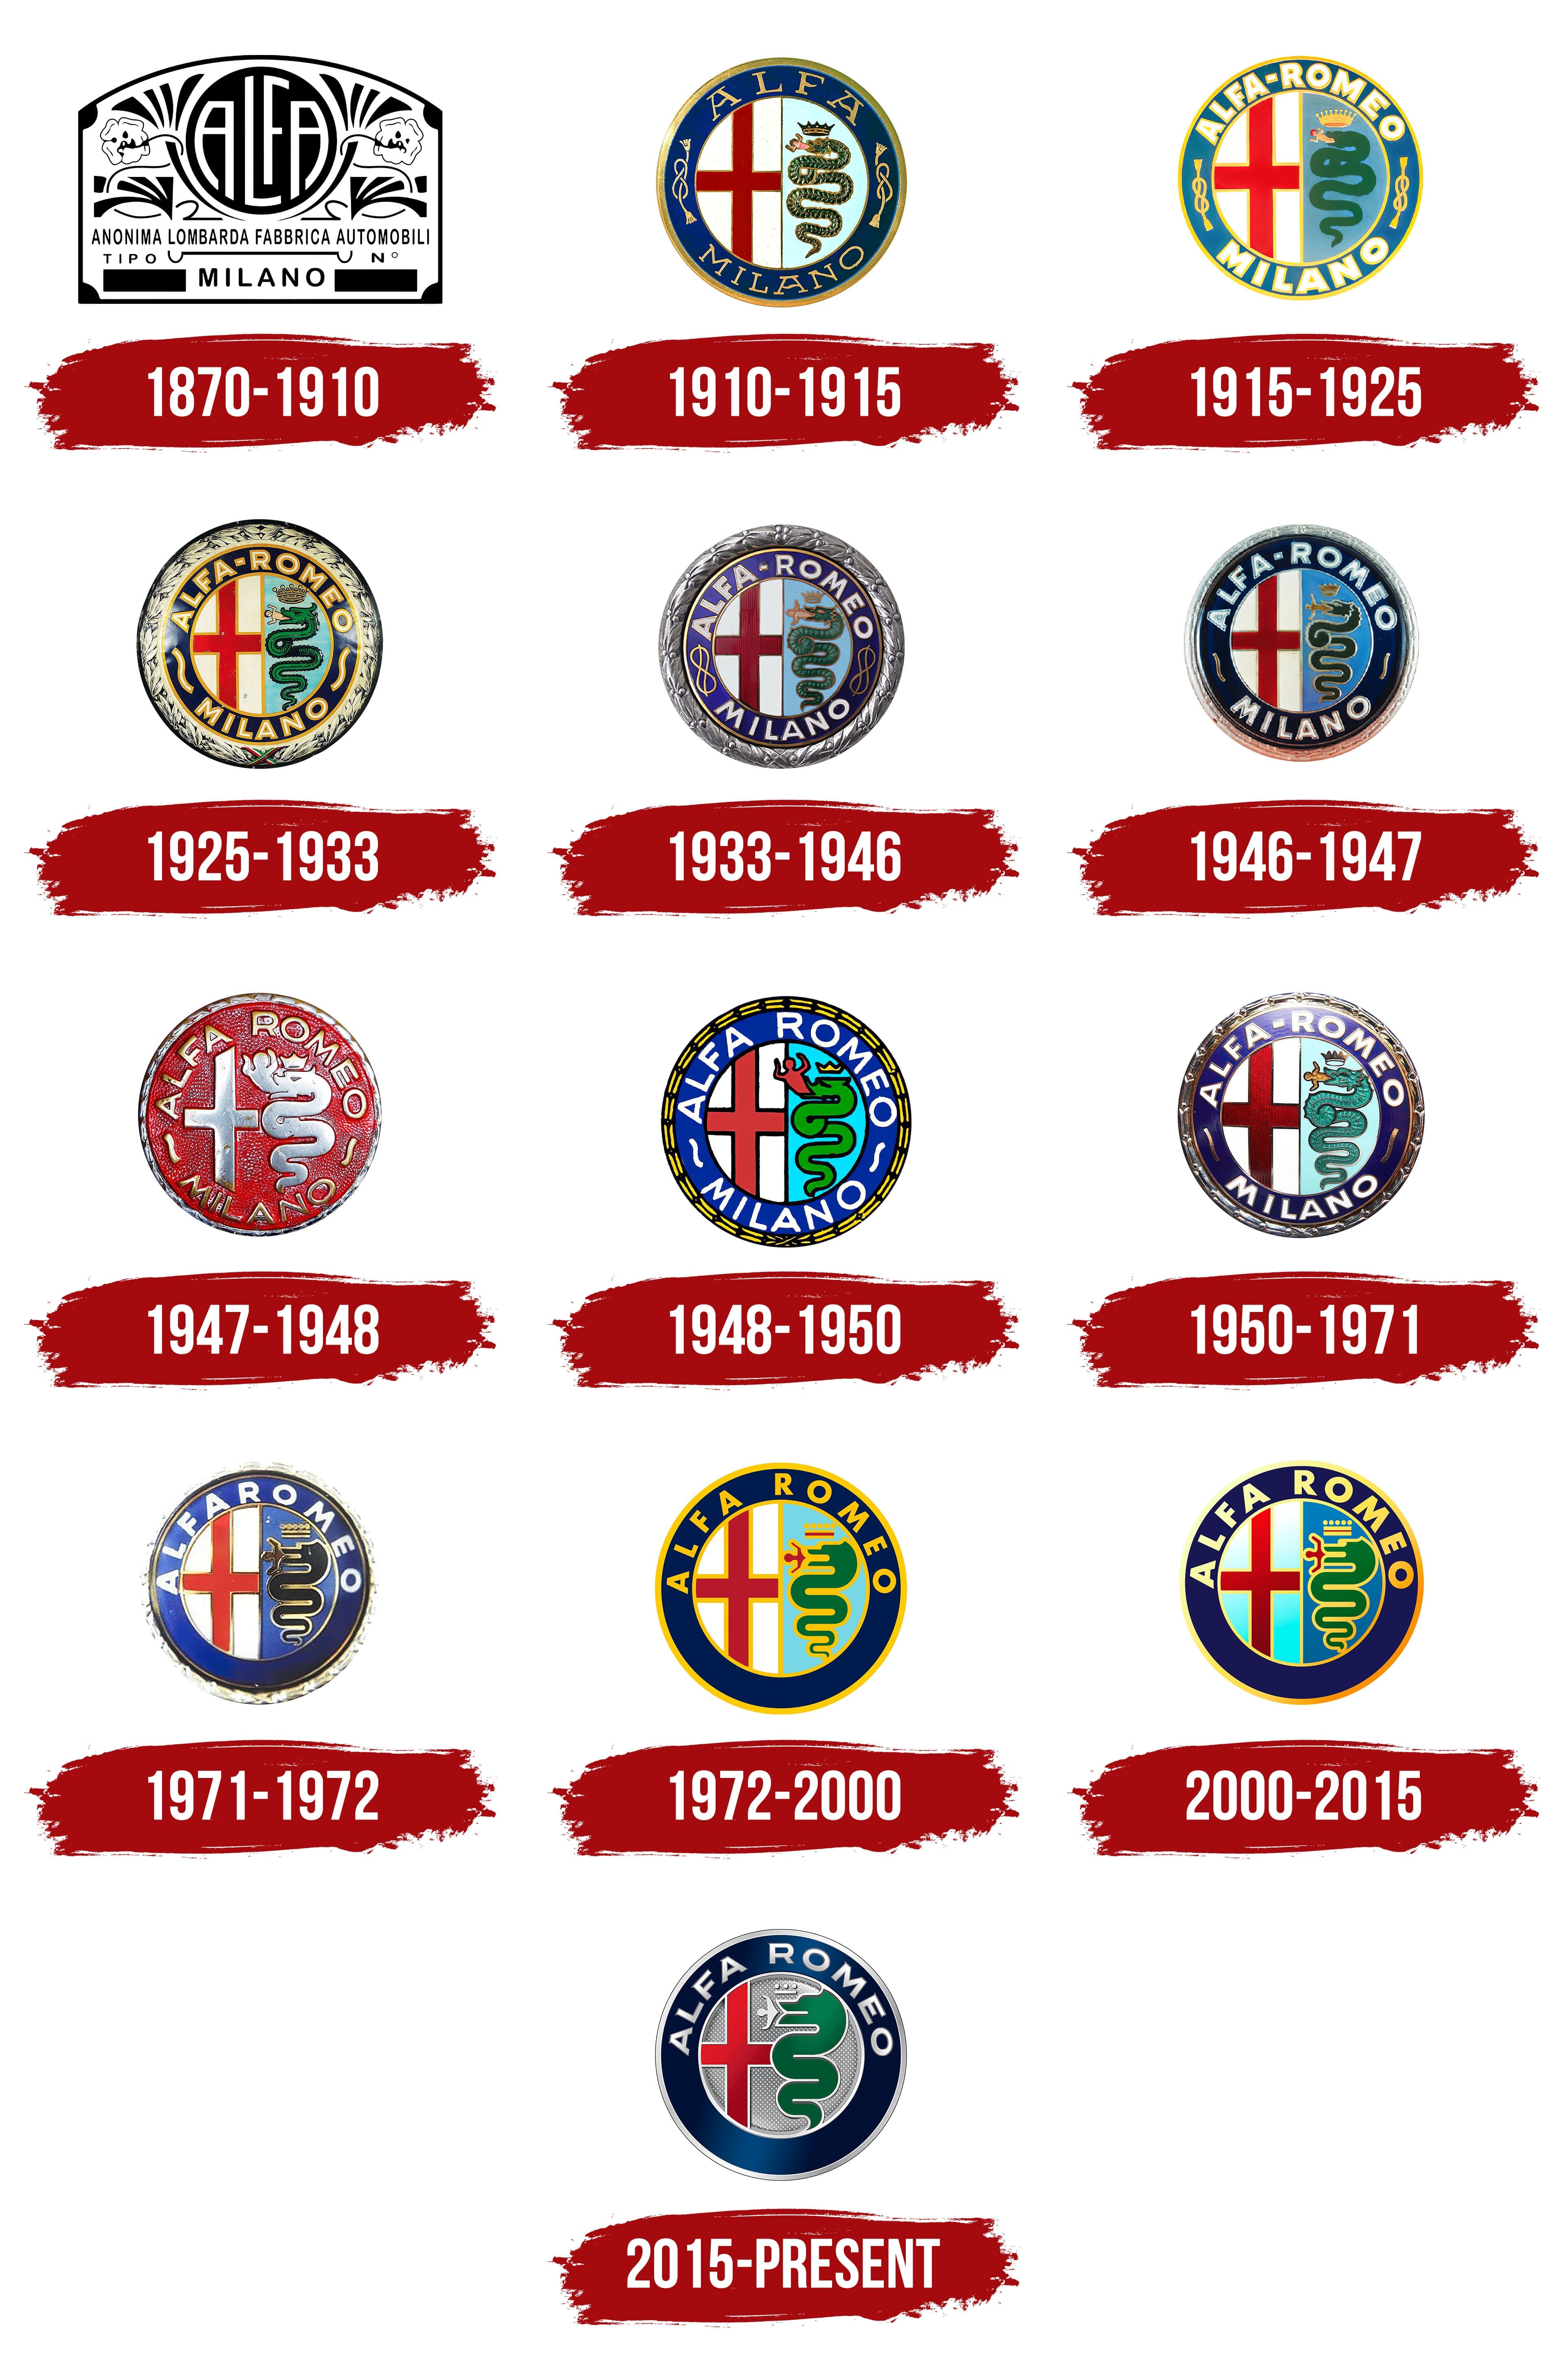 The History of Alfa Romeo